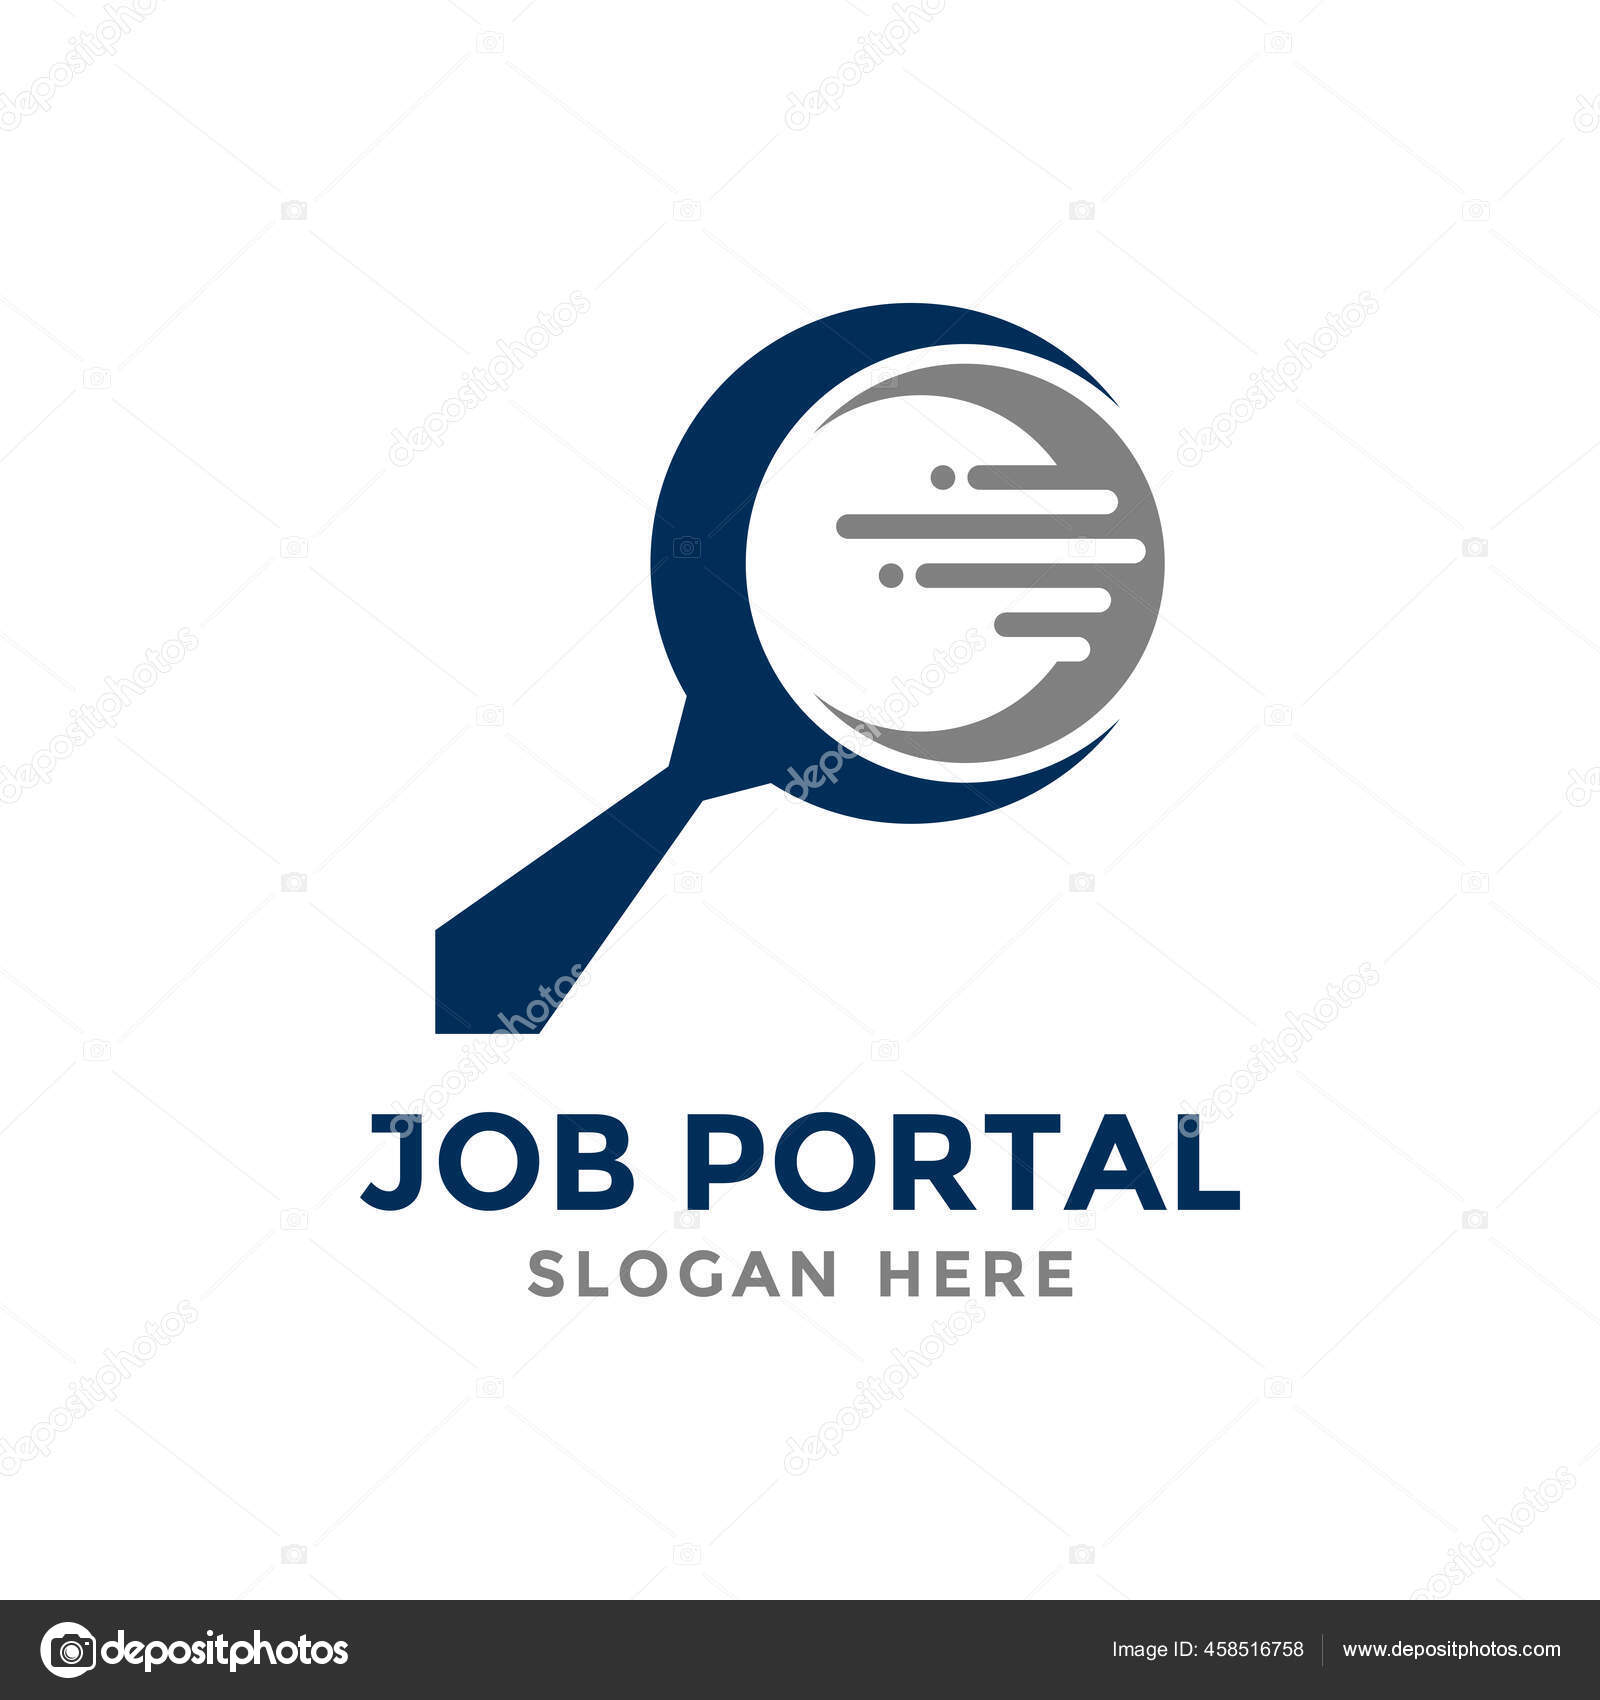 Job portal Vector Art Stock Images | Depositphotos